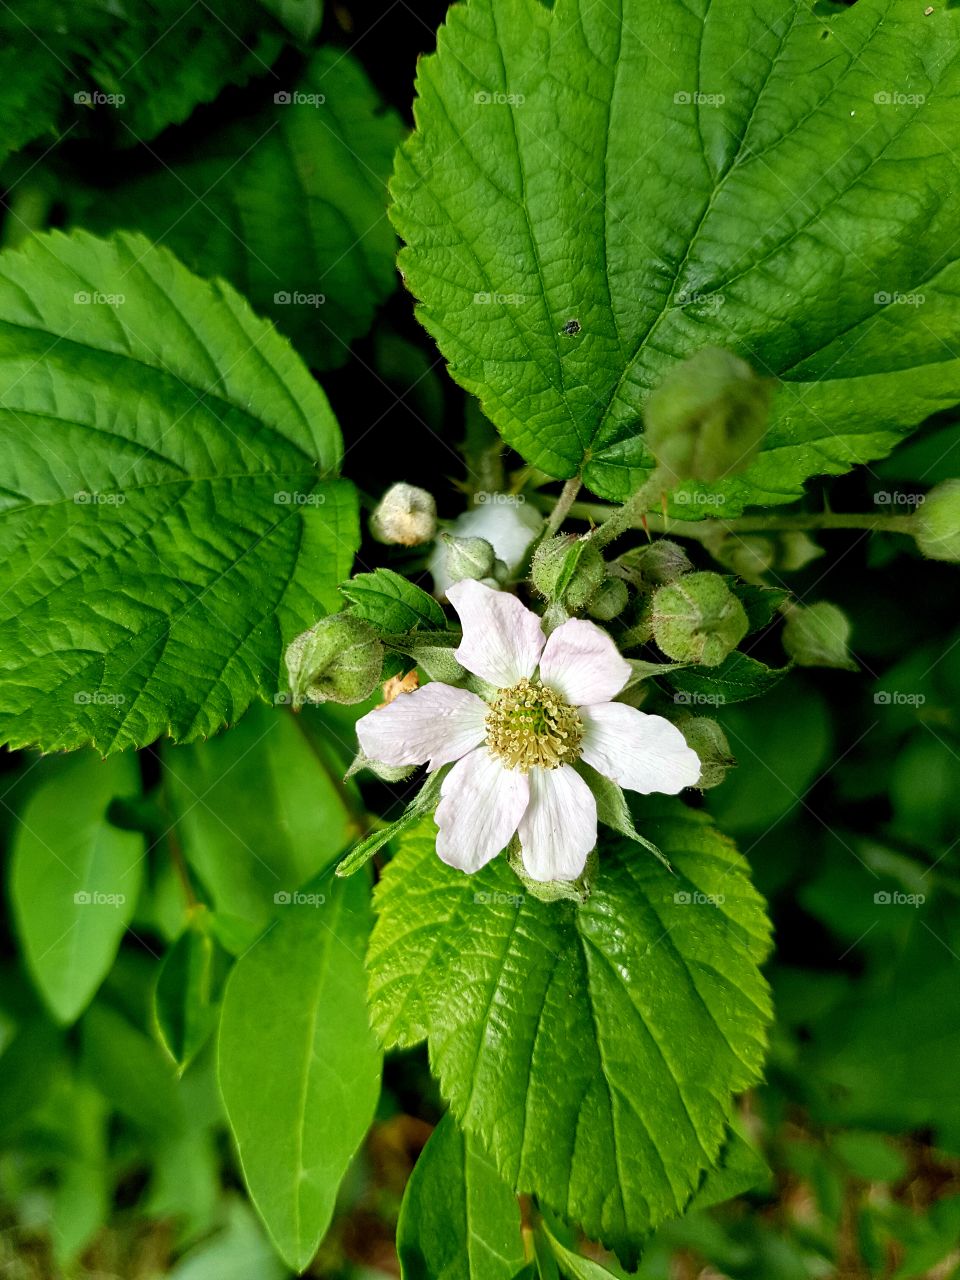 BlackBerry flower